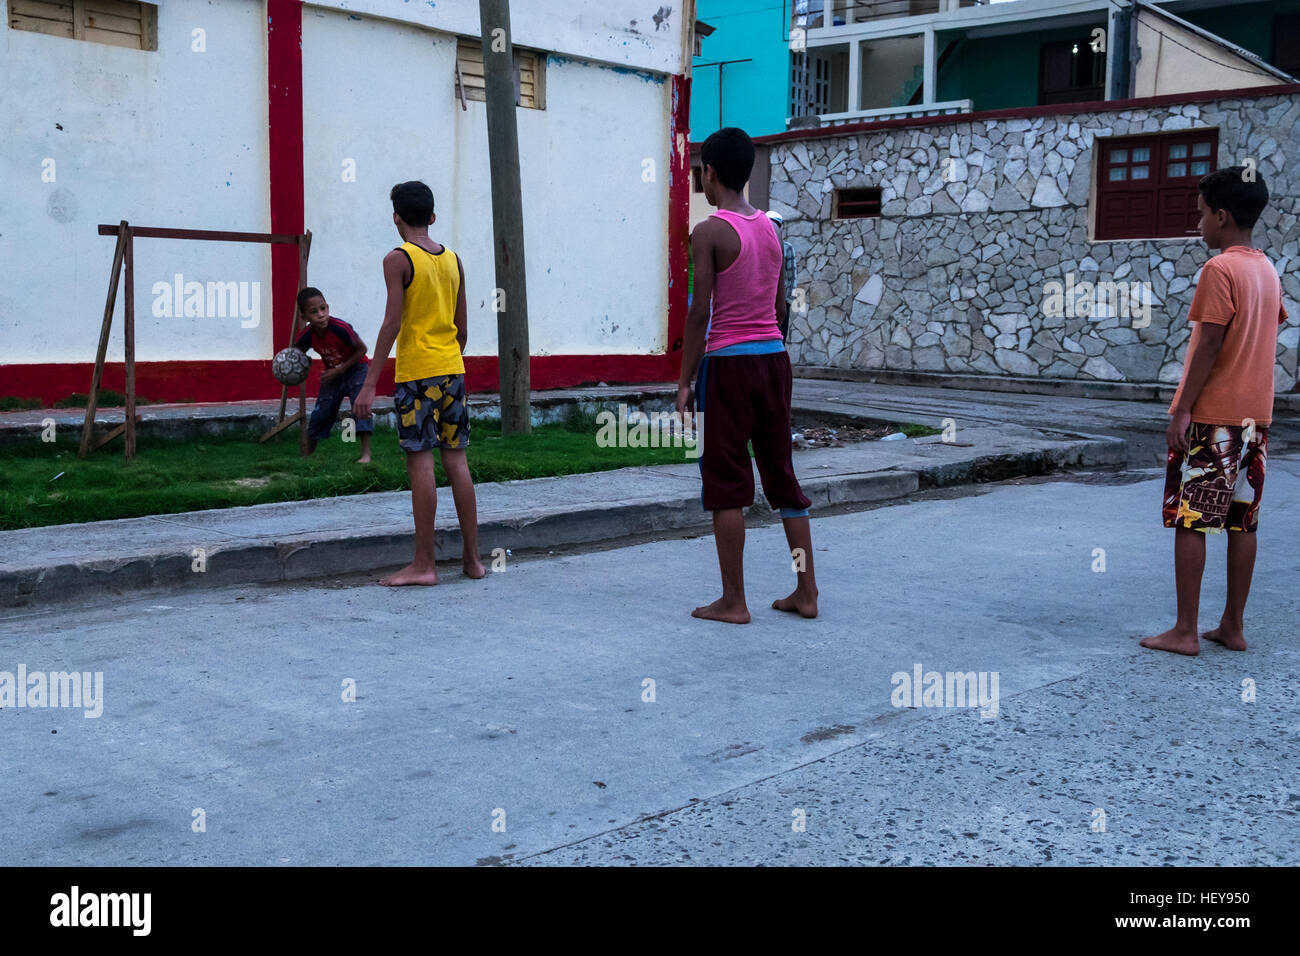 Ragazzi che giocano a calcio a piedi nudi in strada, Baracoa, Cuba Foto Stock